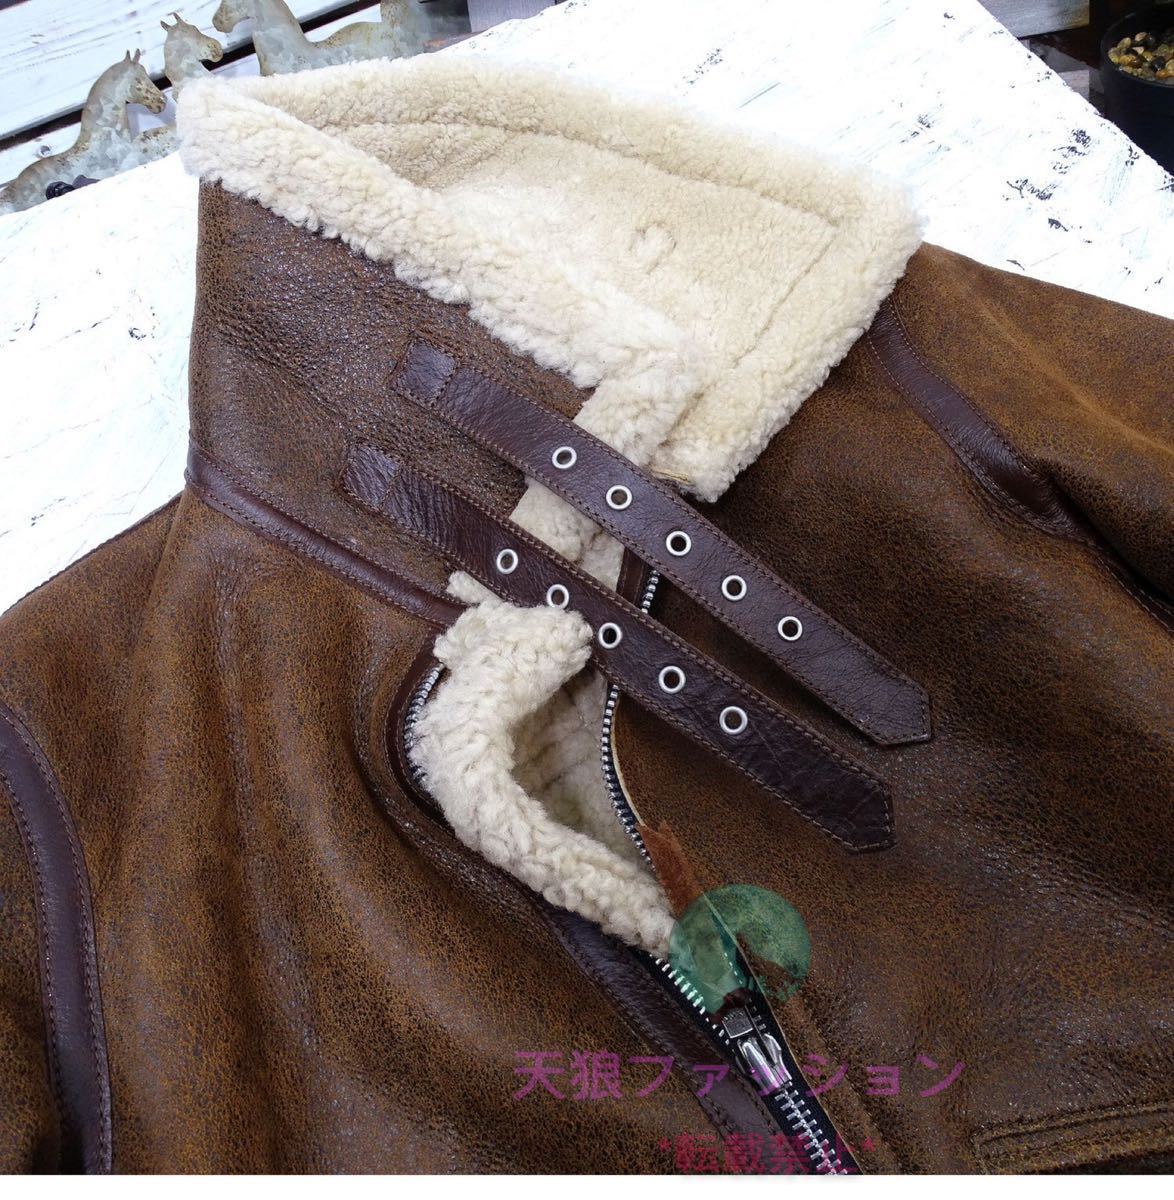 *B-3 "куртка пилота" кожа ягненка мутон овчина мех цельный AUS натуральный кожа натуральная кожа пальто защищающая от холода одежда мужская мода очень толстый 2 цвет S~3XL